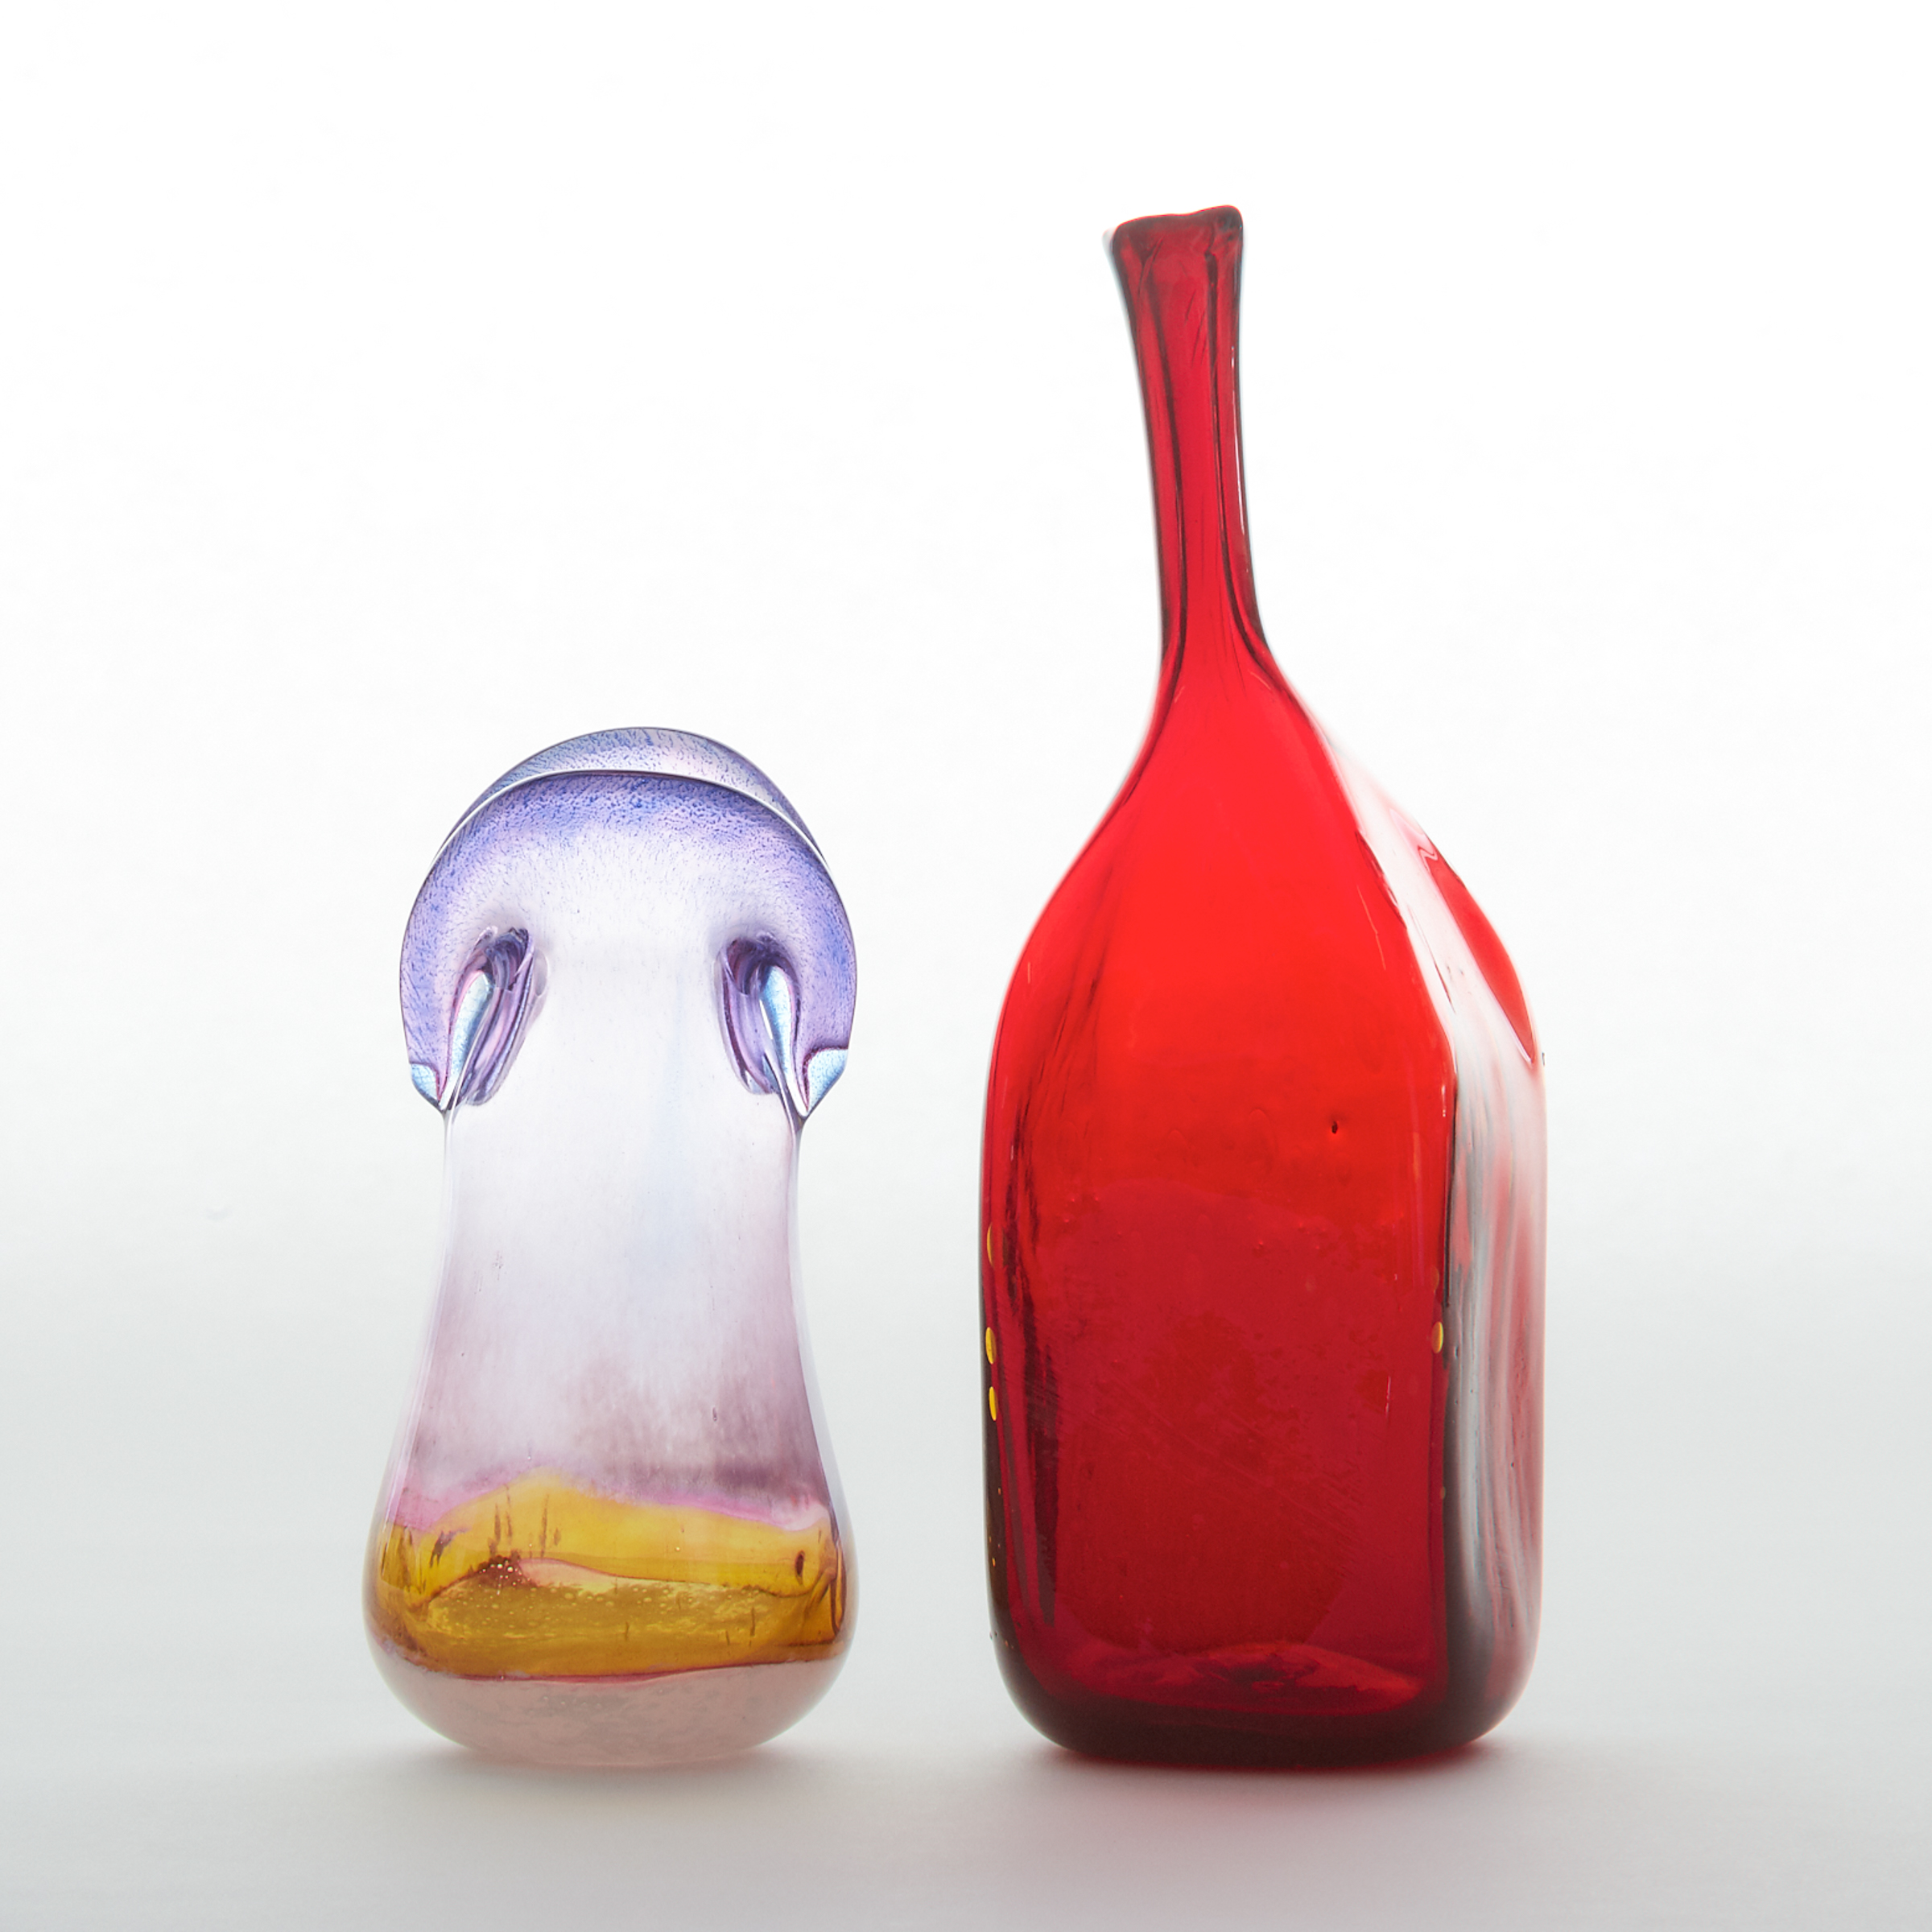 Two Studio Glass Vases, 20th century